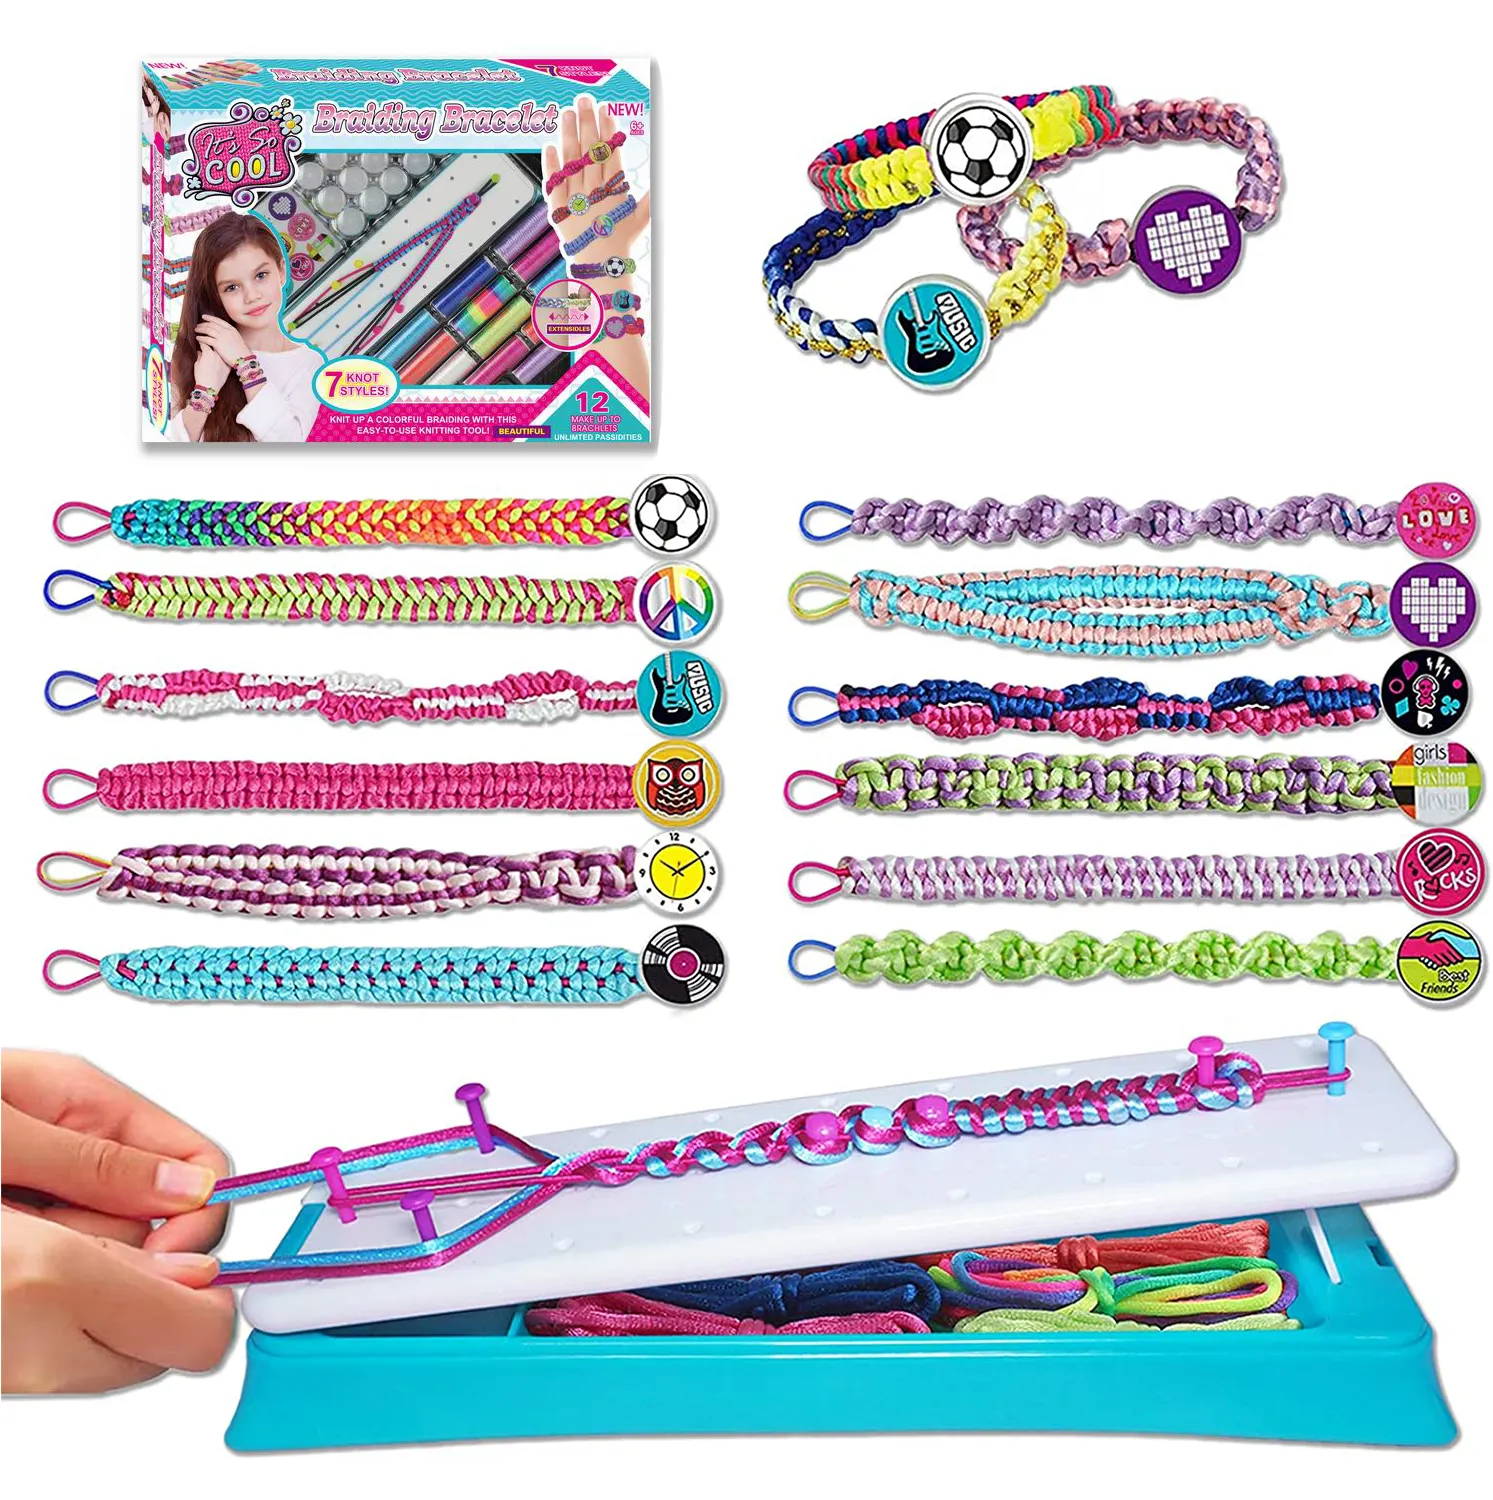 Armband machen Kit für Mädchen, DIY Craft Kits für Kinder 3-10 Jahre Schmuck hersteller Spielzeug Mädchen Lieblings geburtstag Weihnachts geschenk